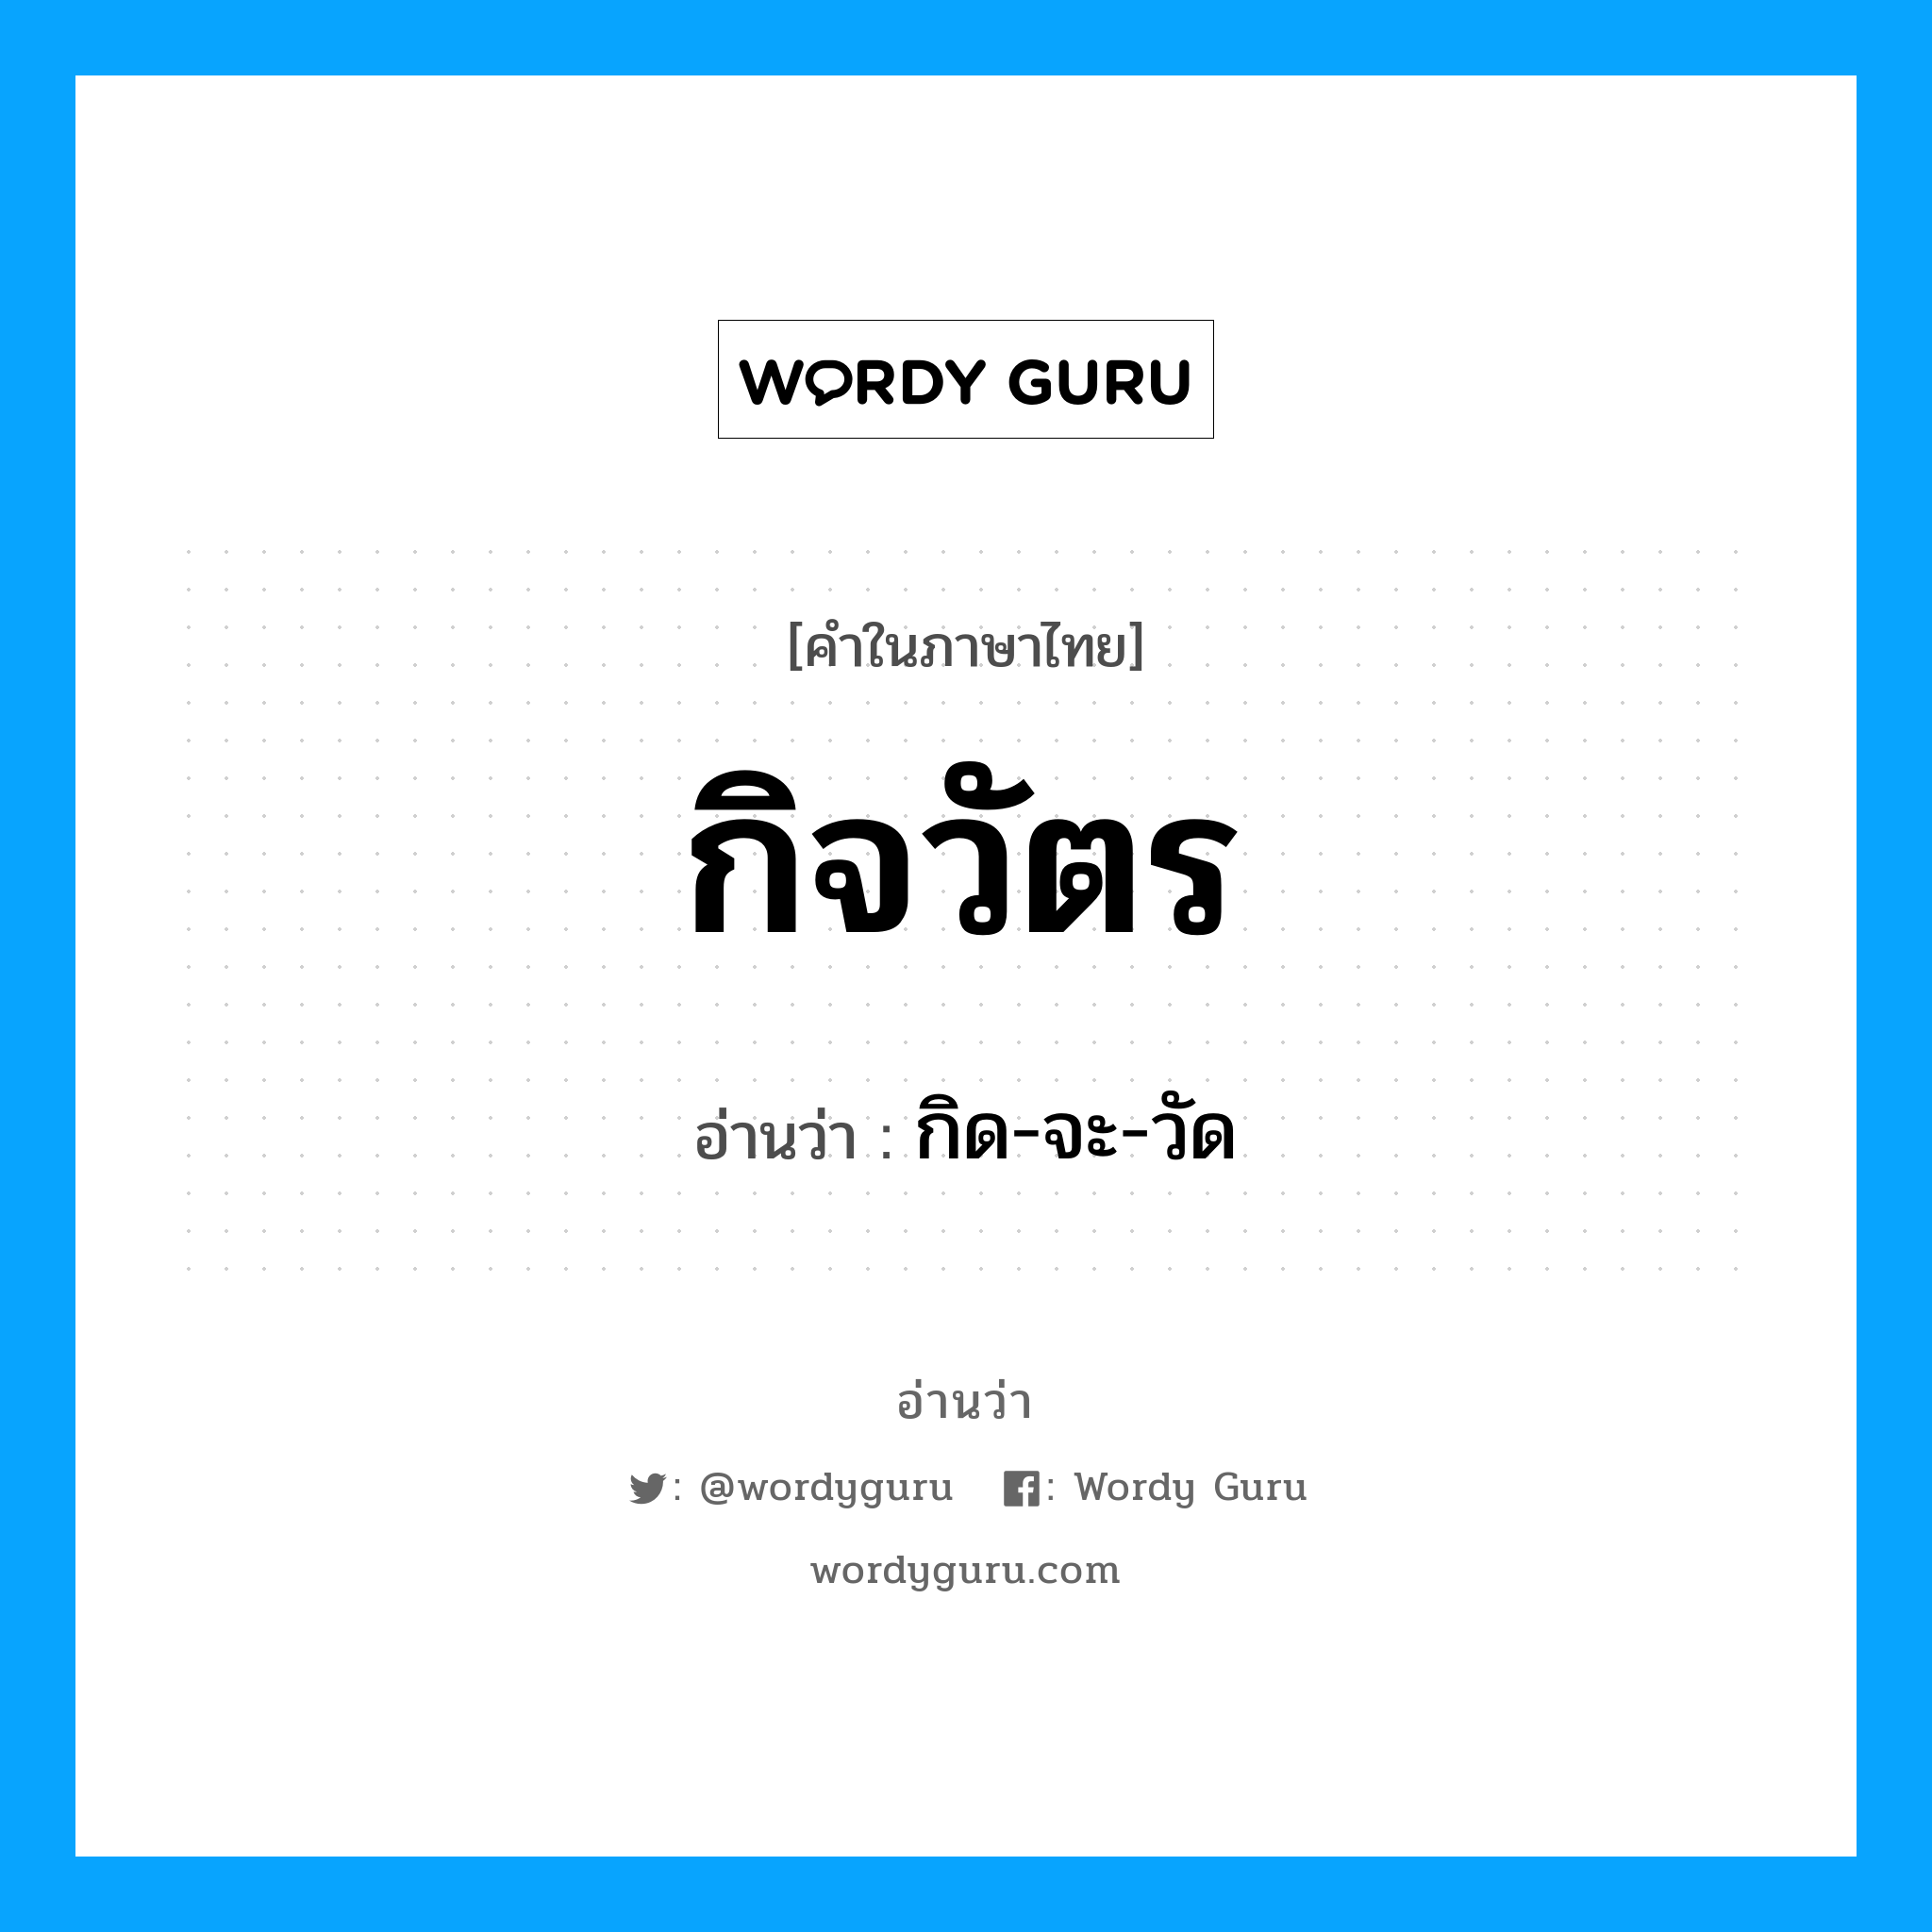 กิด-จะ-วัด เป็นคำอ่านของคำไหน?, คำในภาษาไทย กิด-จะ-วัด อ่านว่า กิจวัตร